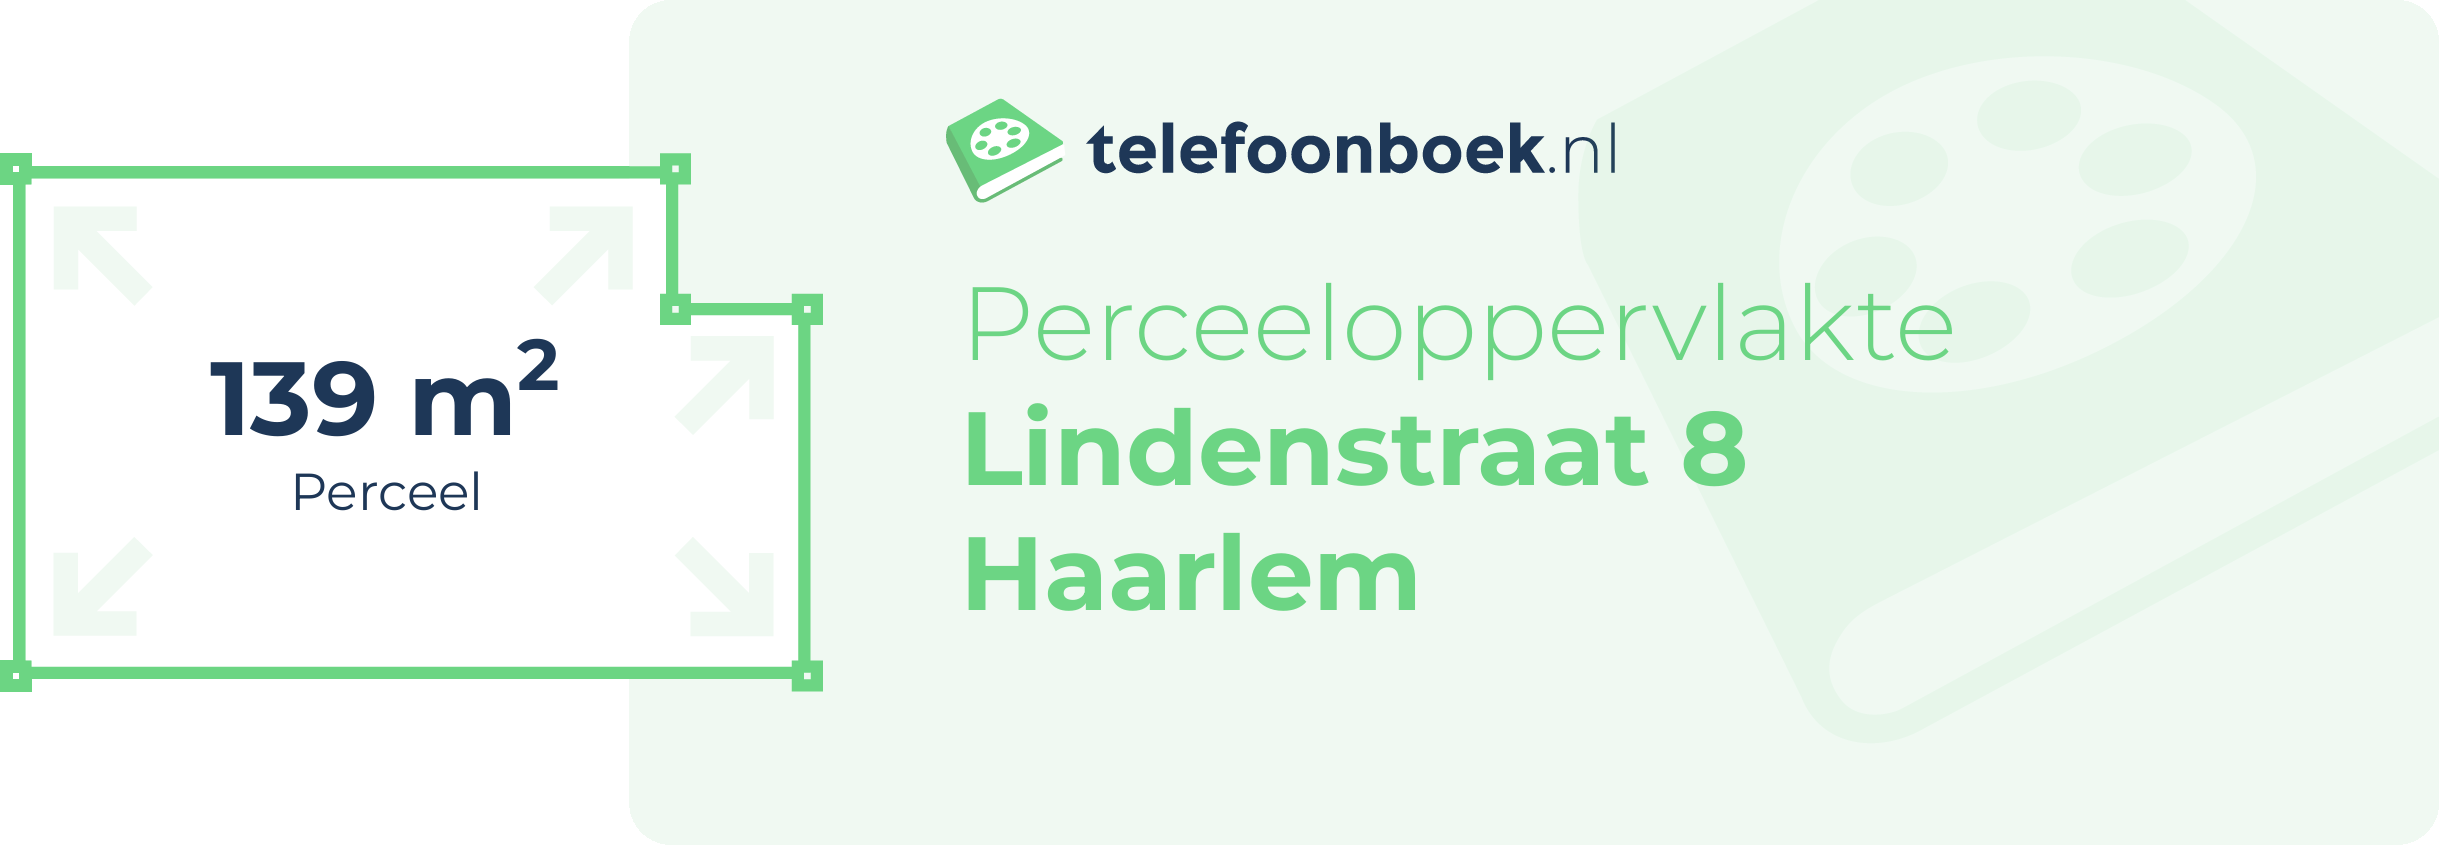 Perceeloppervlakte Lindenstraat 8 Haarlem